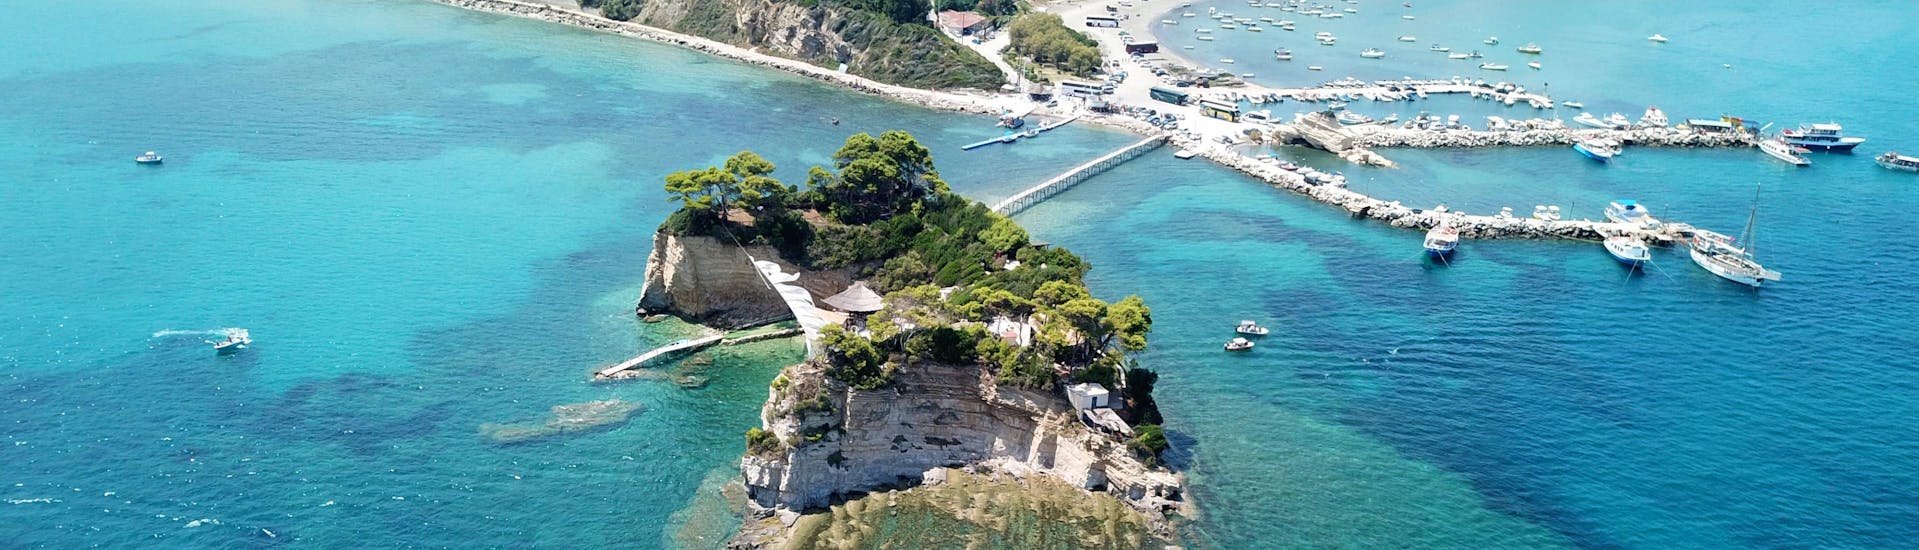 Bild der Bucht von Laganas, Zakynthos, und der Holzbrücke, die die Insel verbindet.